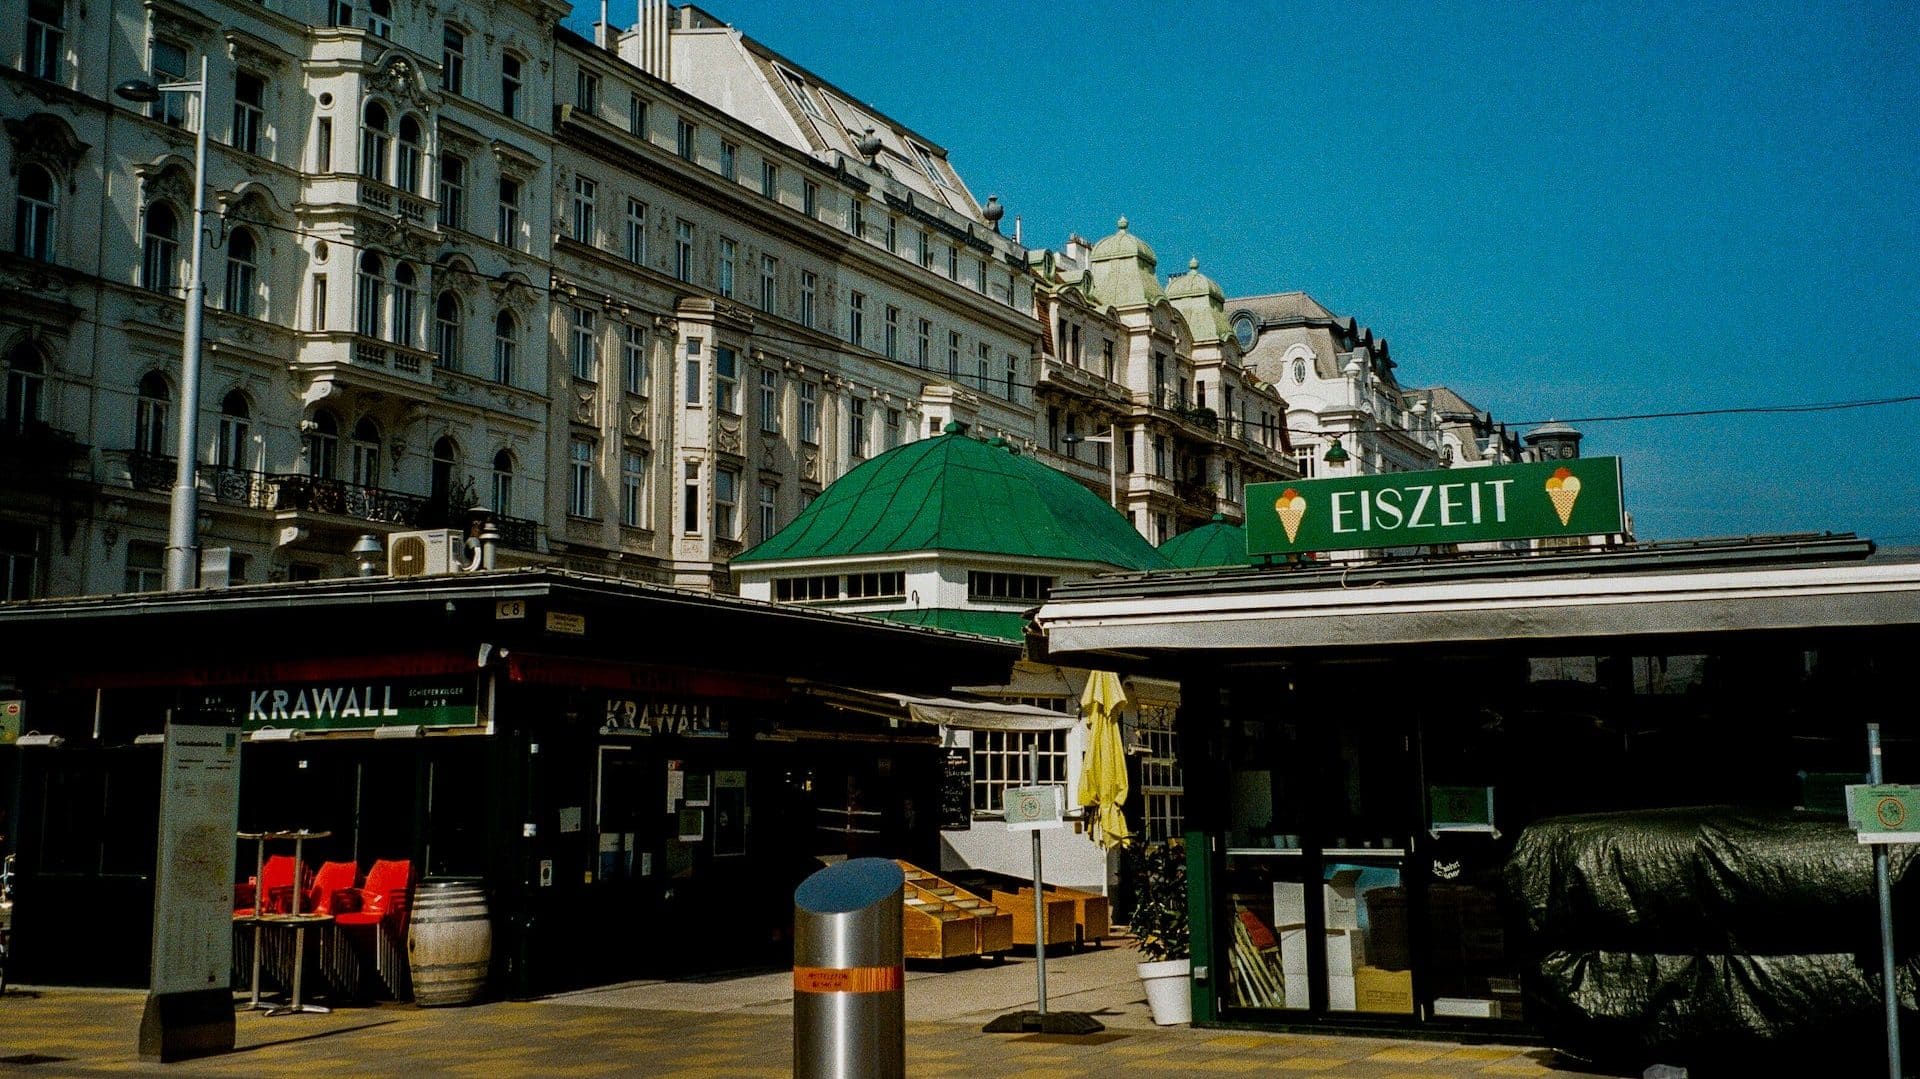 Naschmarkt, el mercado más popular de Viena, se encuentra entre Wieden y Mariahilf